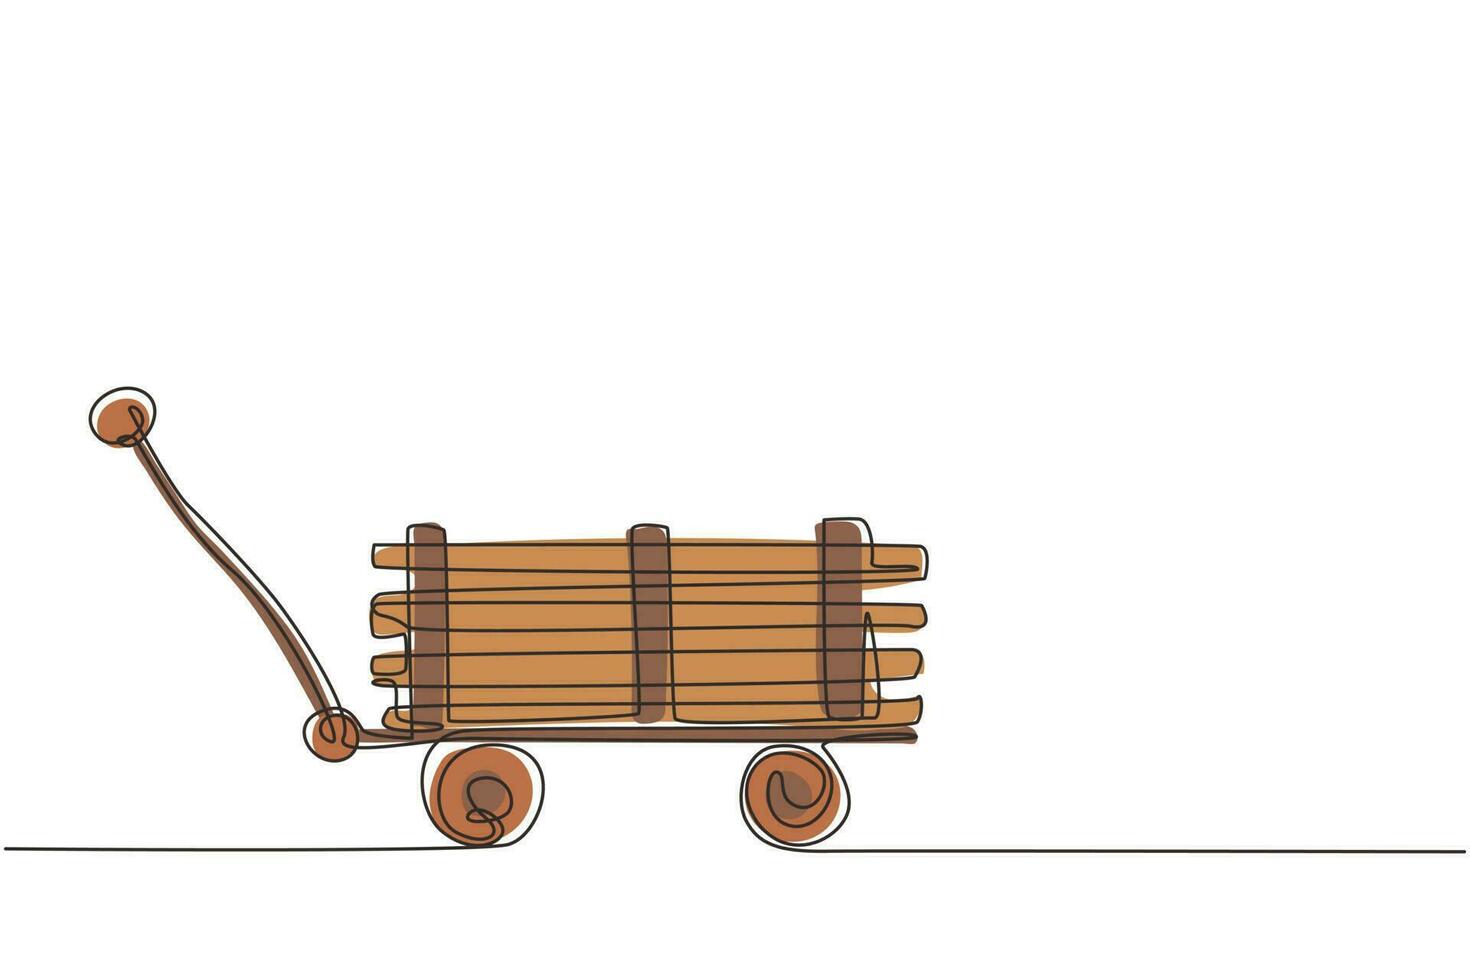 dessin continu d'une ligne jouet mini wagon avec bois. brouette de ferme. équipement de chariot de jardin pour le jardinage, la récolte, la plantation de semis. illustration graphique vectorielle de conception de dessin à une seule ligne vecteur